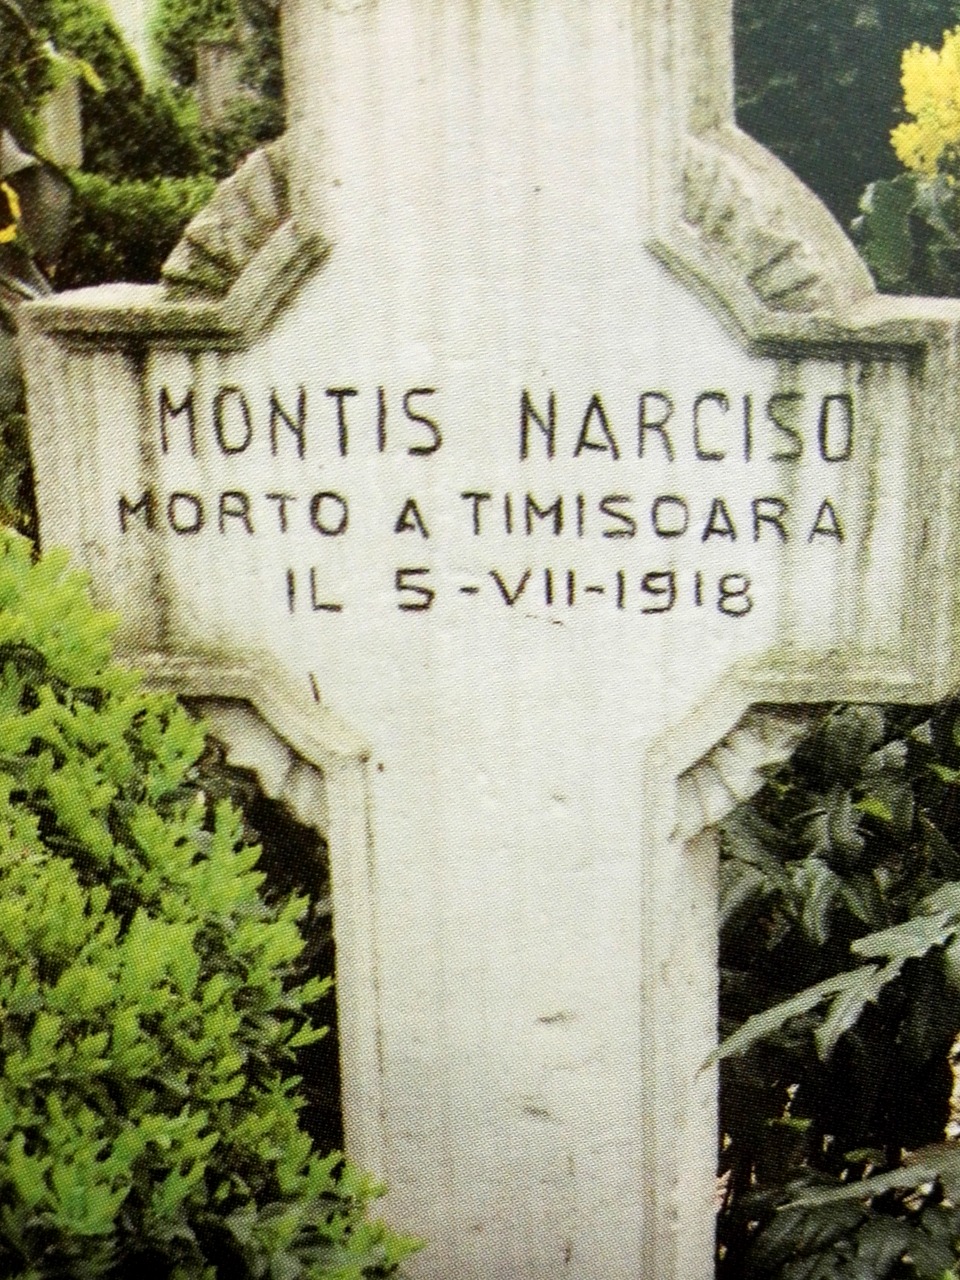 La Tomba di Narciso Montis a Bucarest (dal libro "Mortos in terra anzena" di Giuliano Chirra)